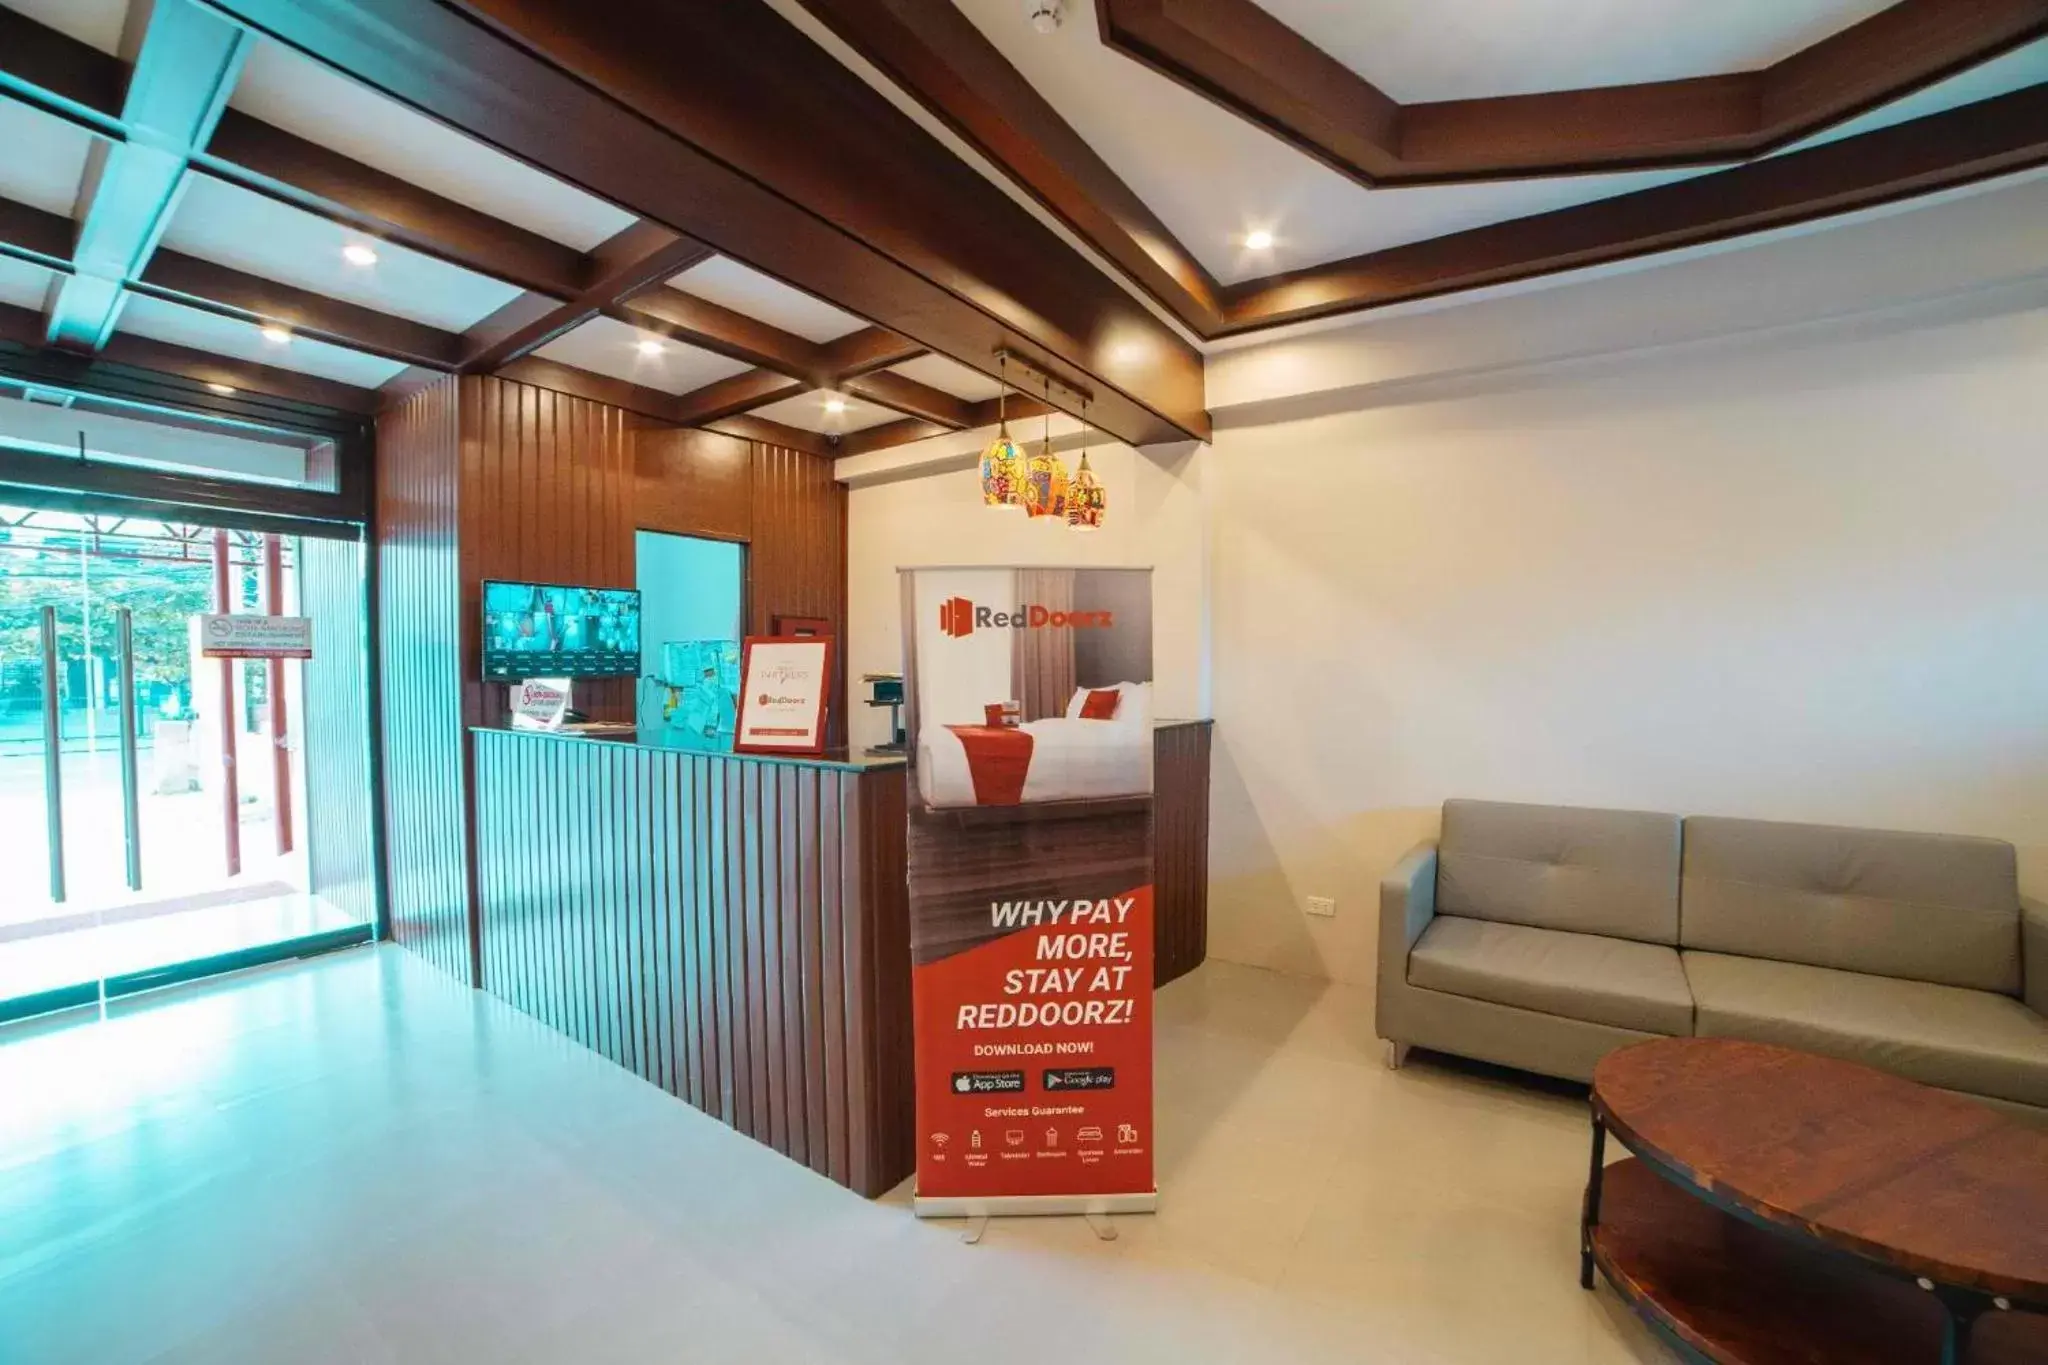 Lobby or reception, Lobby/Reception in RedDoorz at Traveler's Inn Bajada Davao